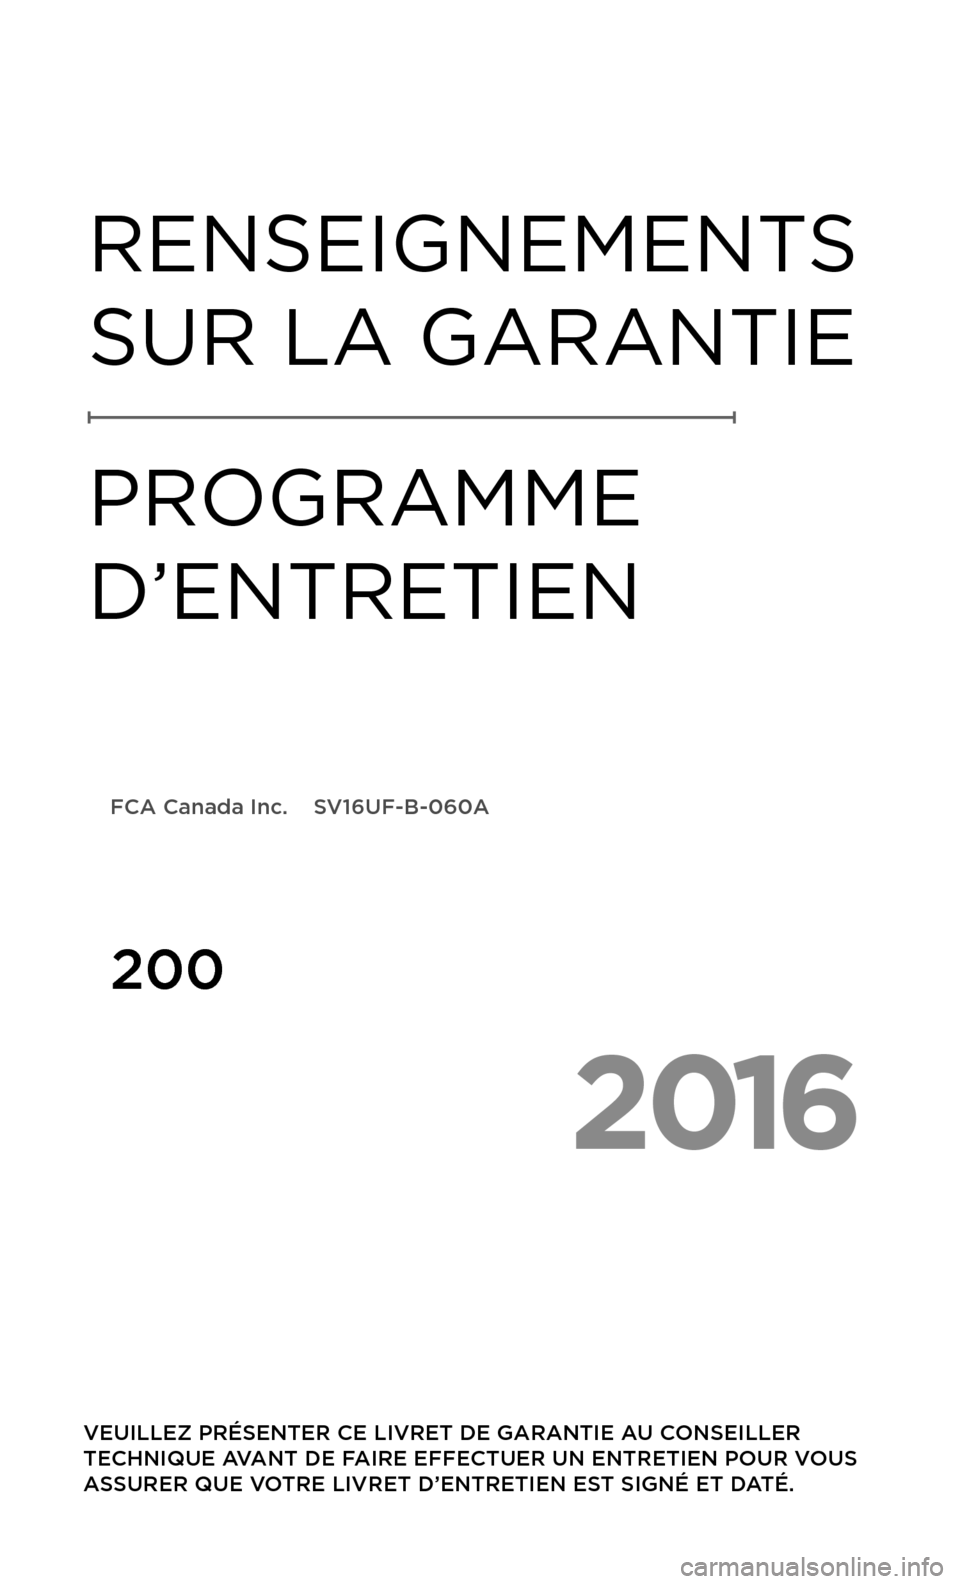 CHRYSLER 200 2016 2.G Warranty Booklet 2016
 VEUILLEZ PRÉSENTER CE LIVRET DE GARANTIE AU CONSEILLER 
TECHNIQUE AVANT DE FAIRE EFFECTUER UN ENTRETIEN POUR VOUS 
ASSURER QUE VOTRE LIVRET D’ENTRETIEN EST SIGNÉ ET DATÉ.
RENSEIGNEMENTS 
SU